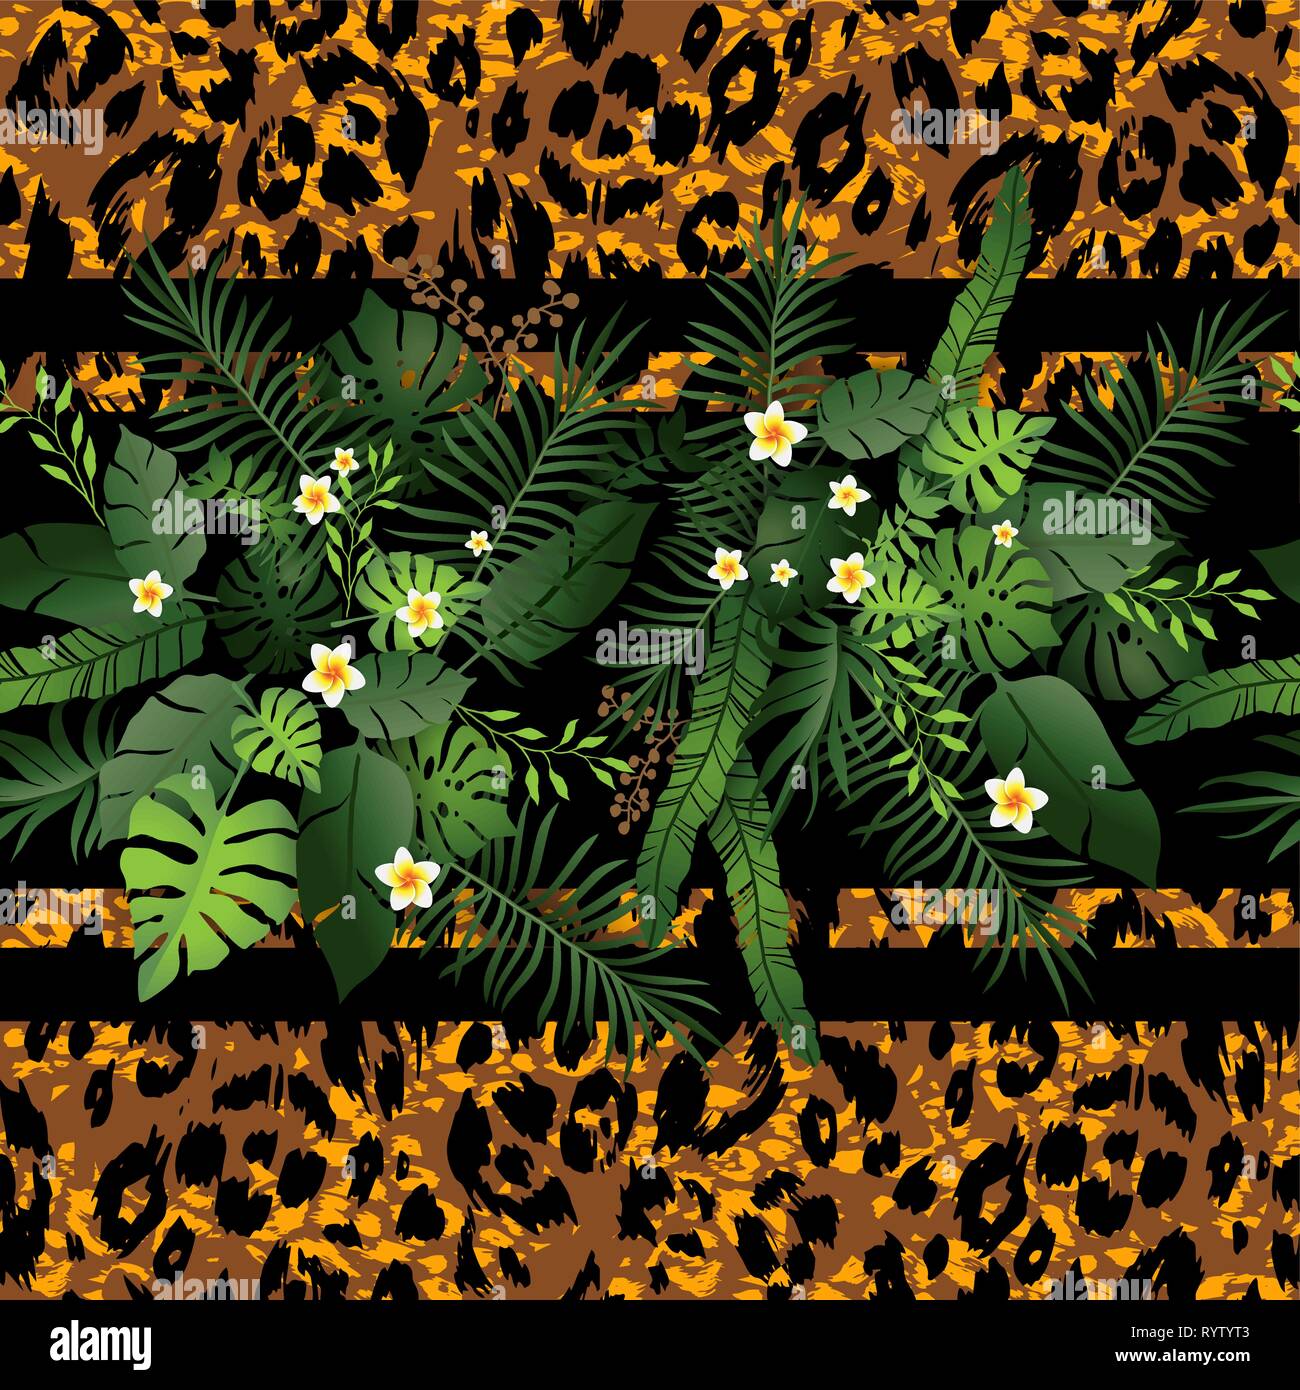 Nahtlose Muster exotische Floral Background. Tropische Blumen und Blätter auf die tierische Haut Kulisse. Grün und Leopard Print nahtloses Design Stock Vektor